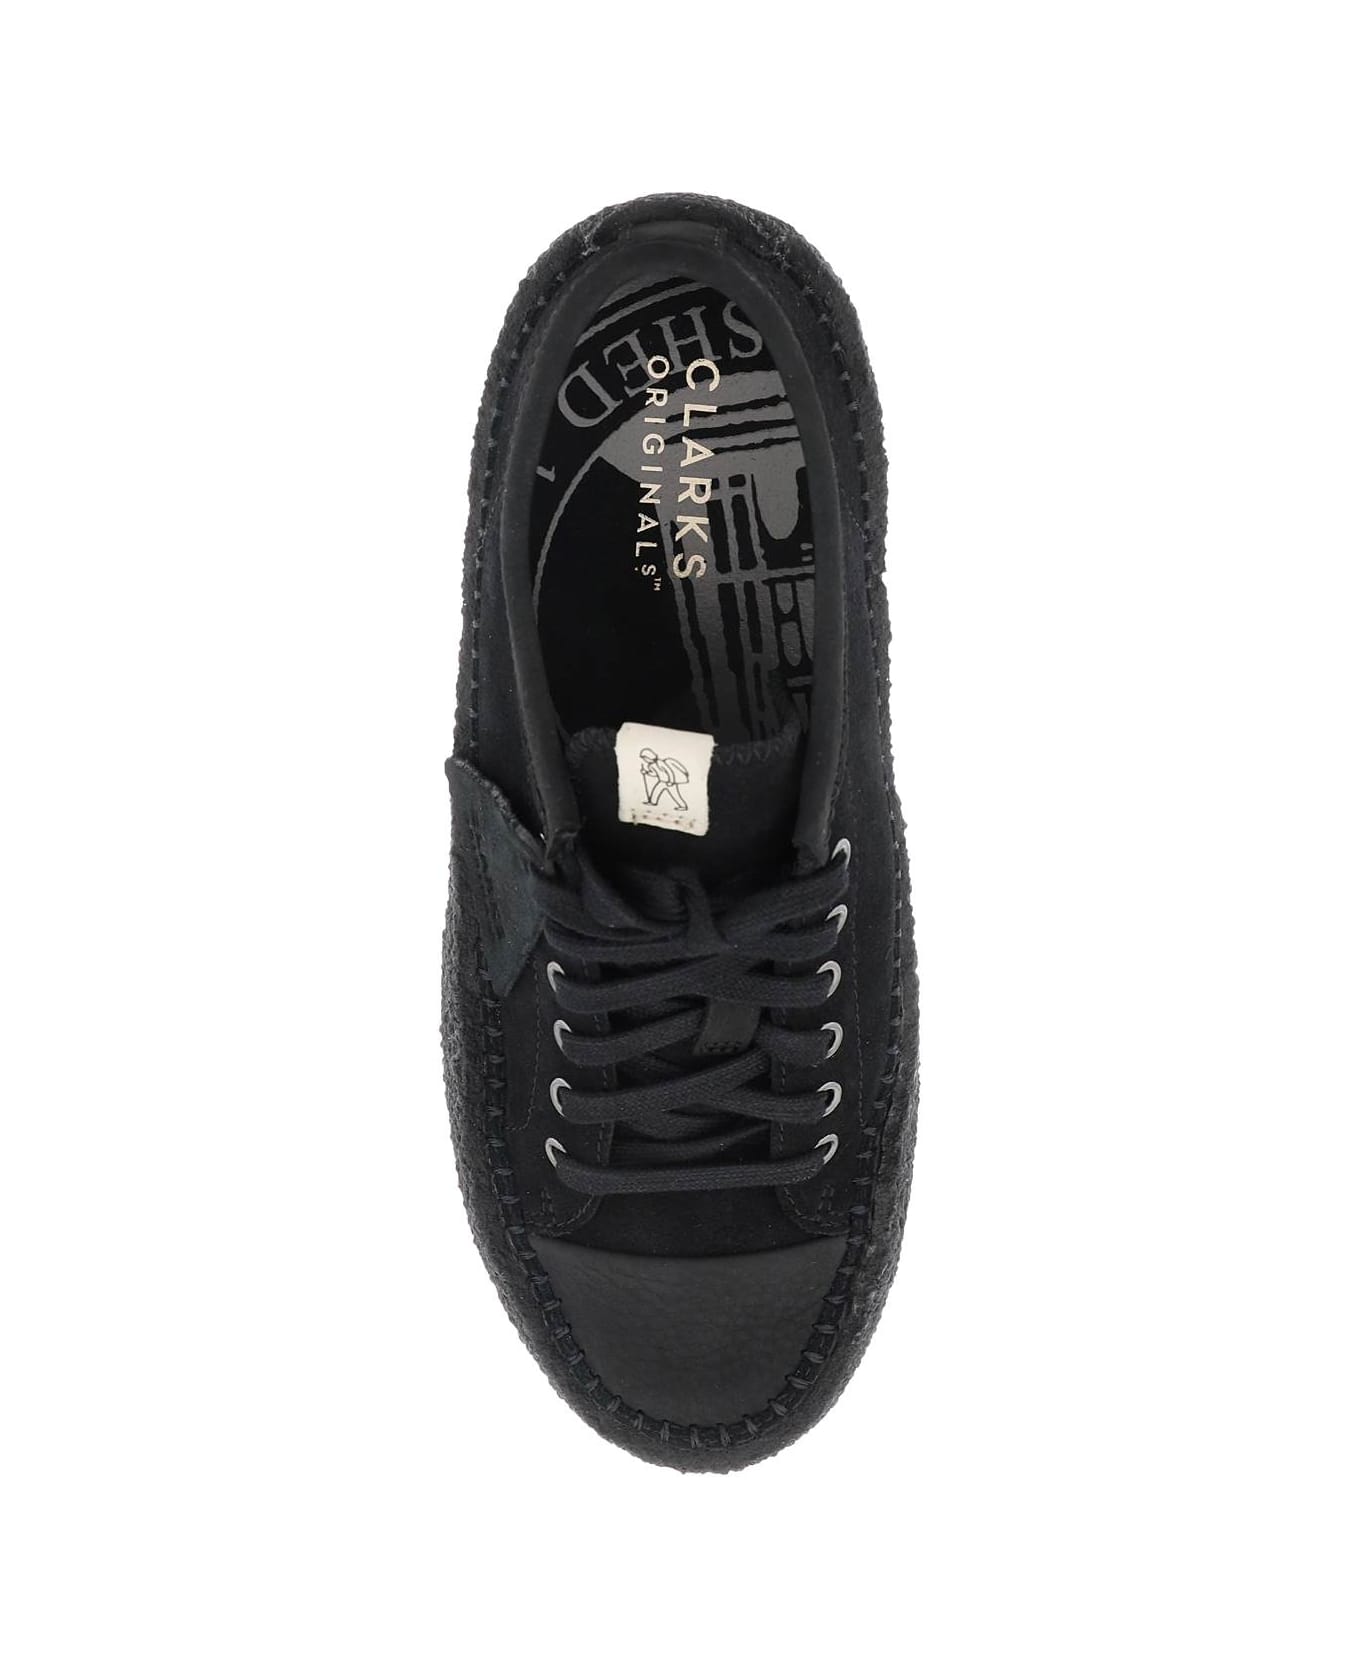 Clarks Suede Leather 'caravan' Sneakers - BLACK (Black)